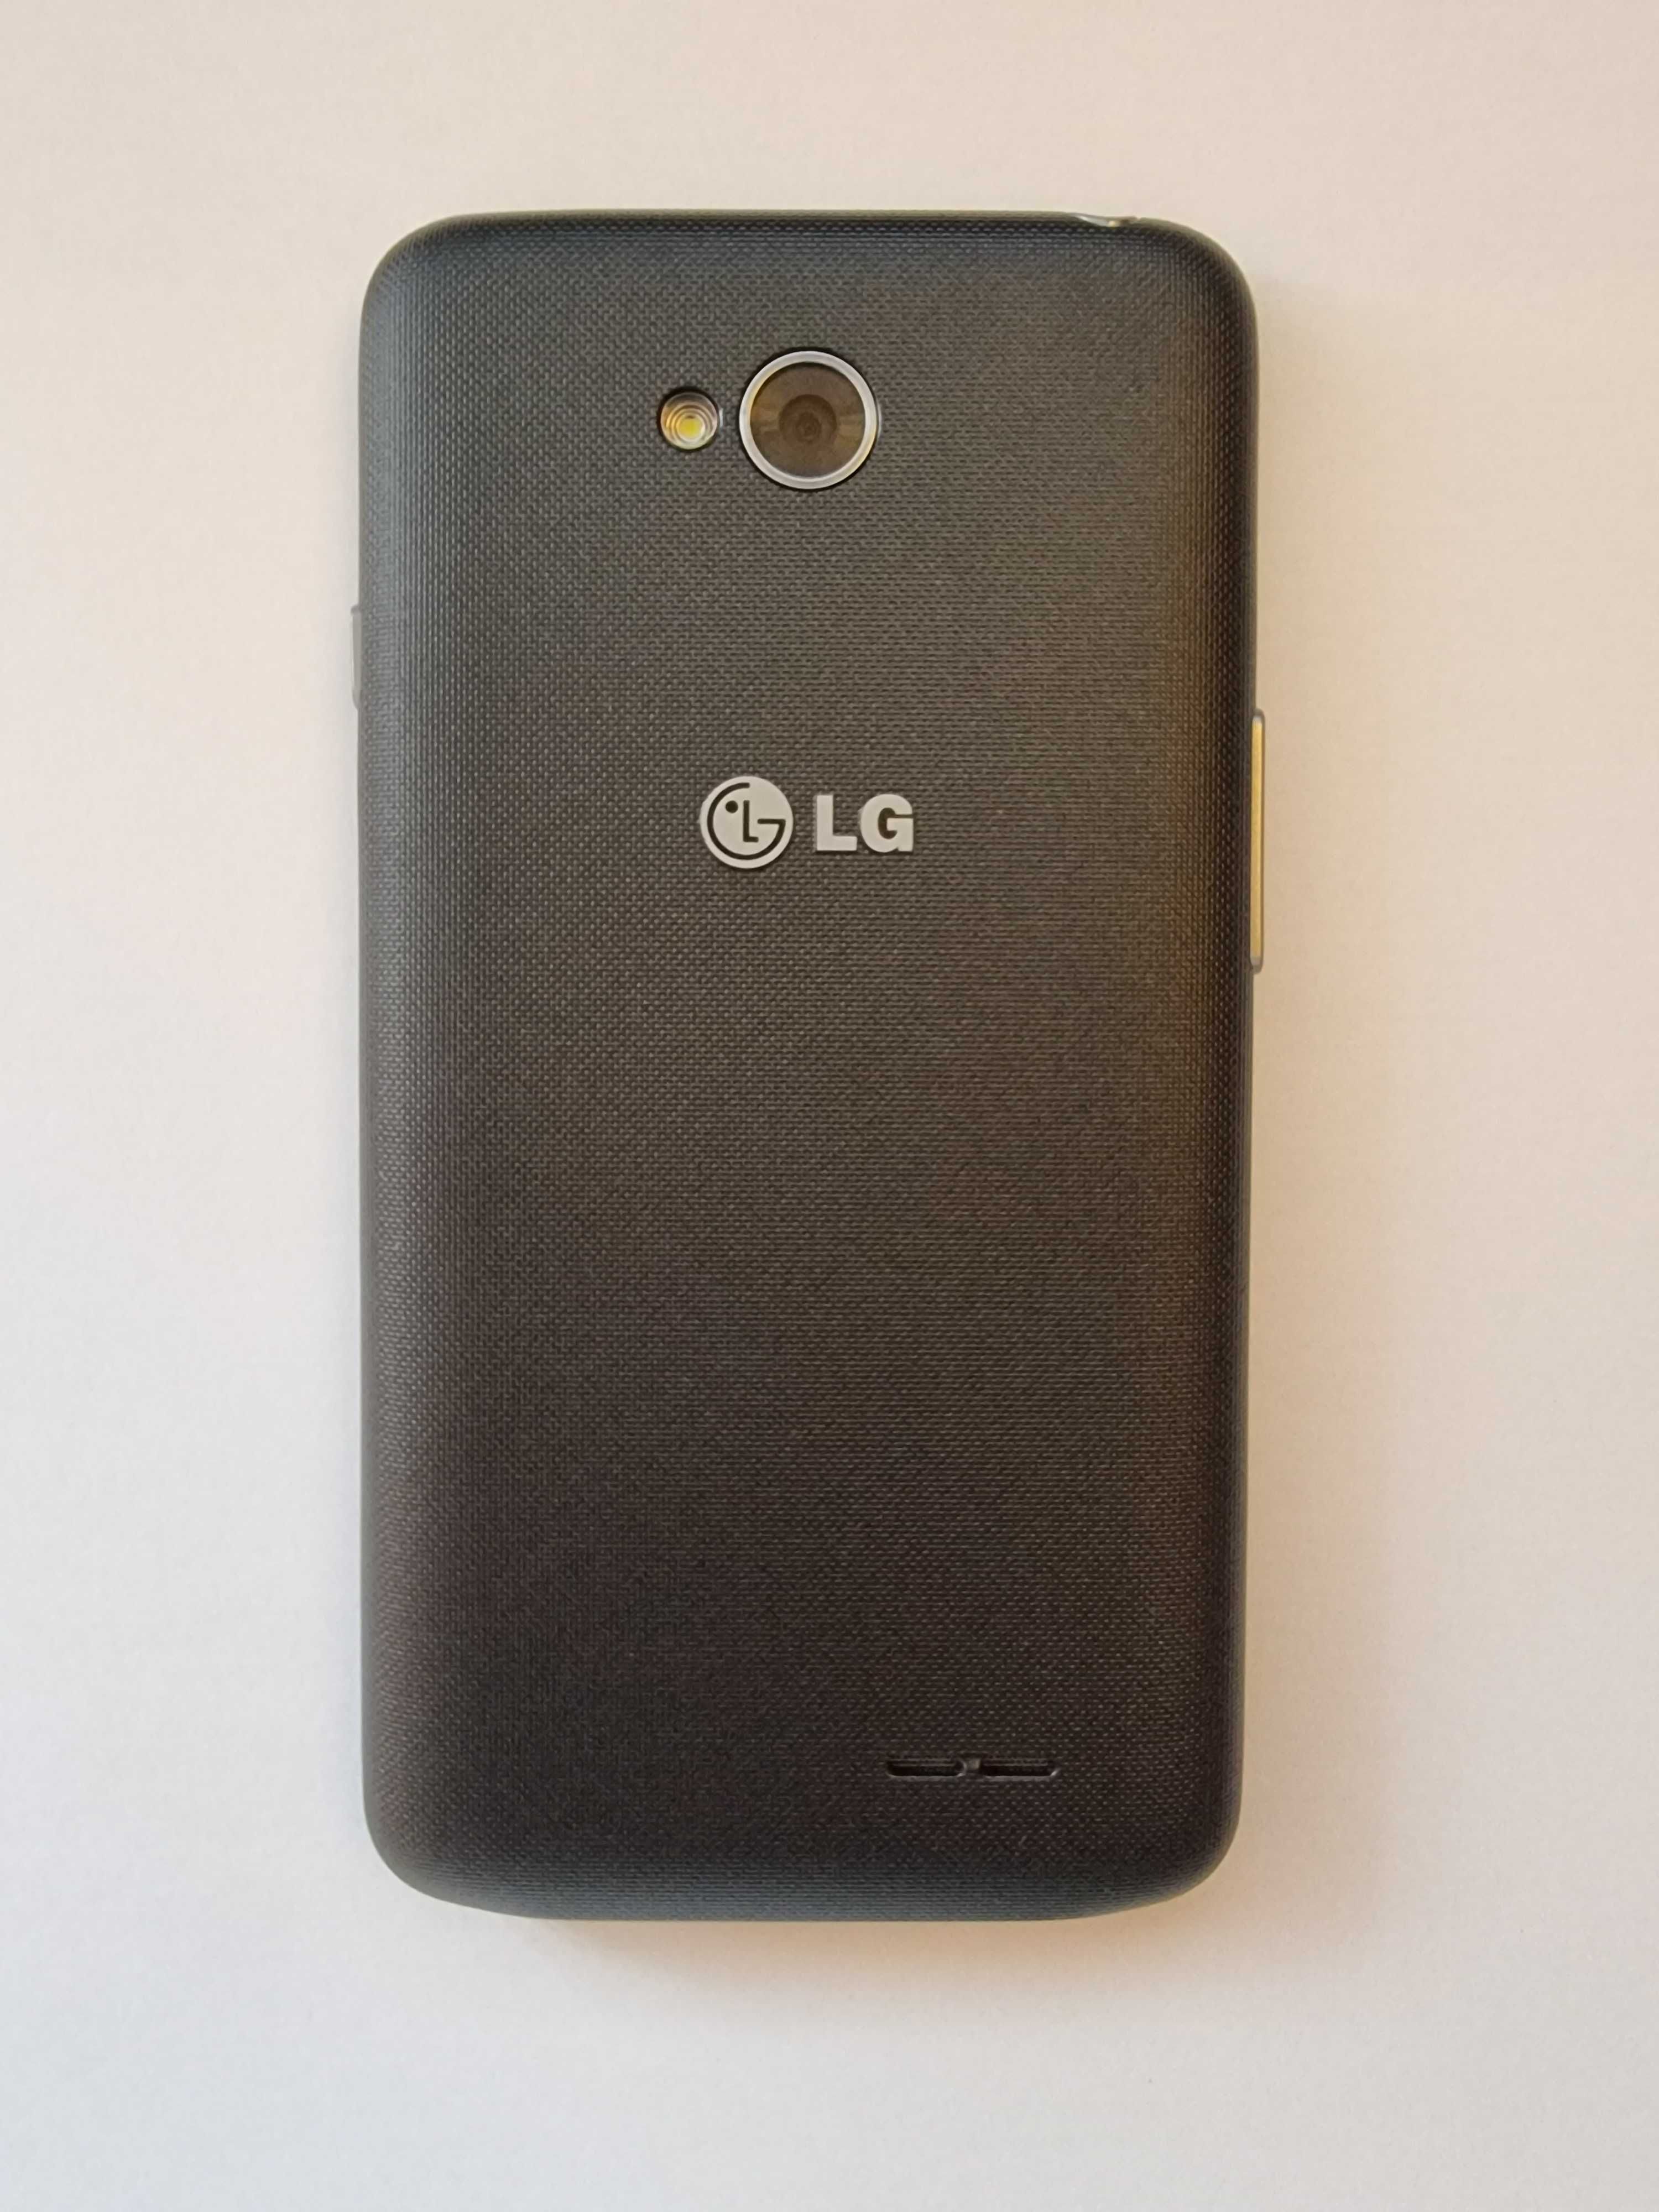 Smartphone Android LG L65 D280N (igual a novo)